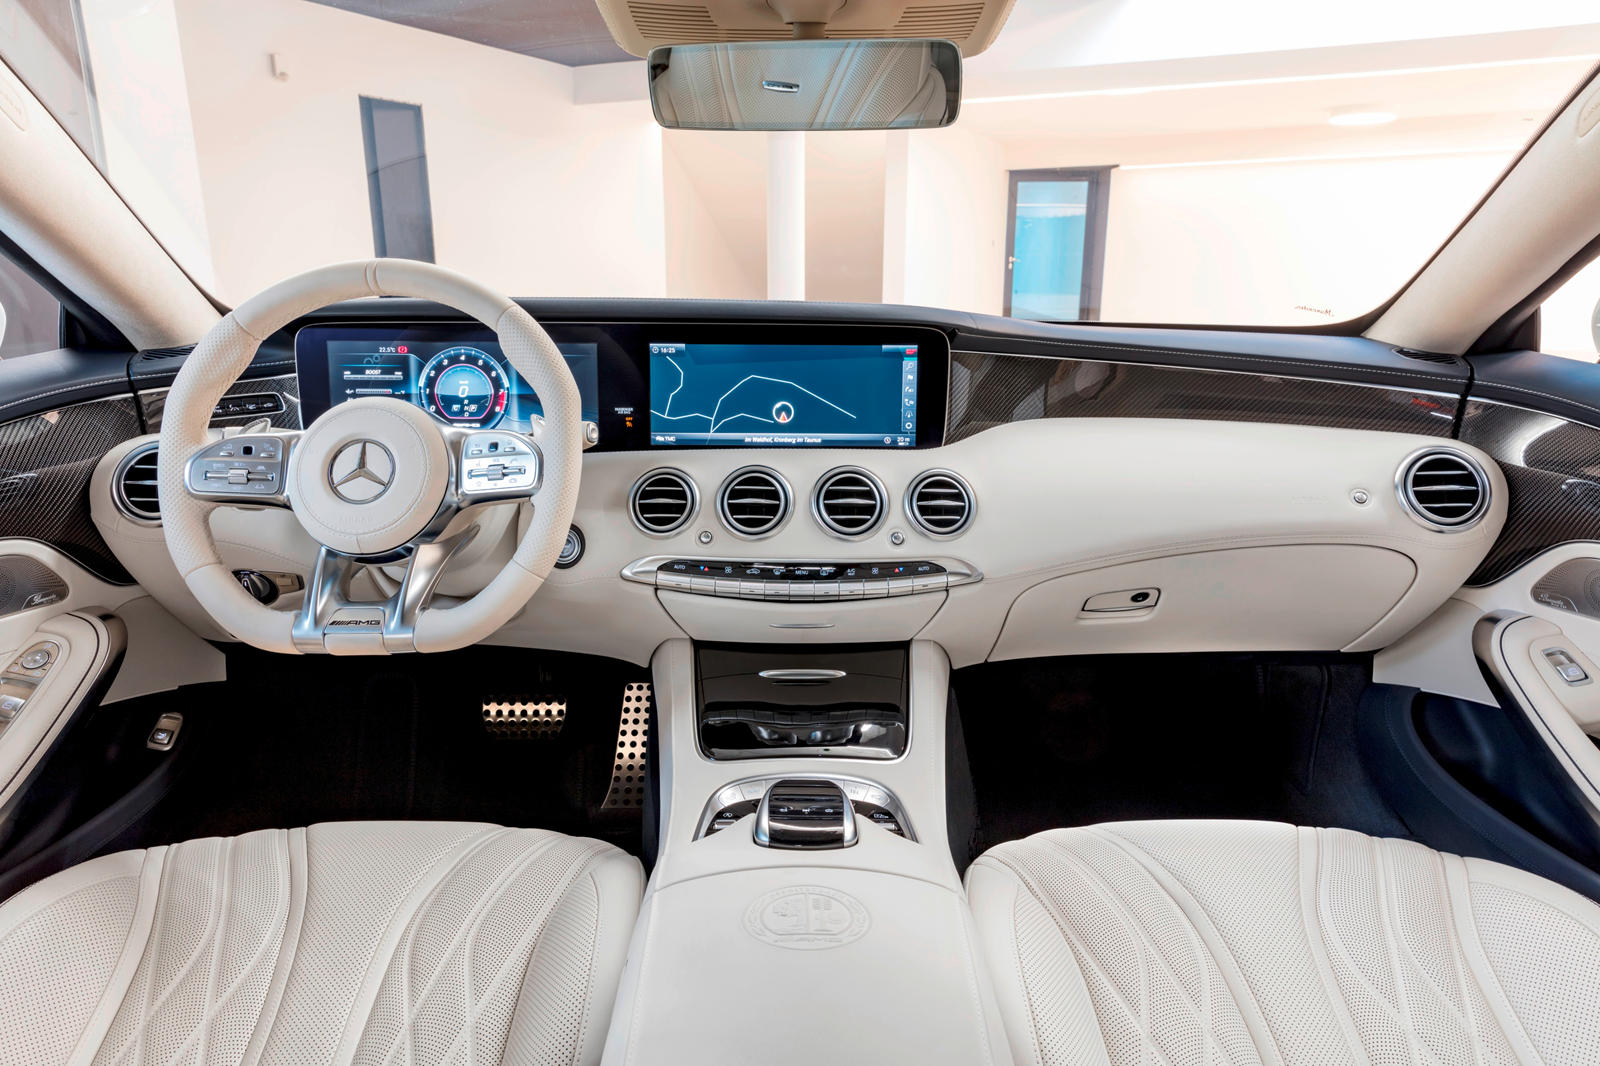 Make life charm cheap 2019 Mercedes-AMG S63 Coupe Interior Photos | CarBuzz